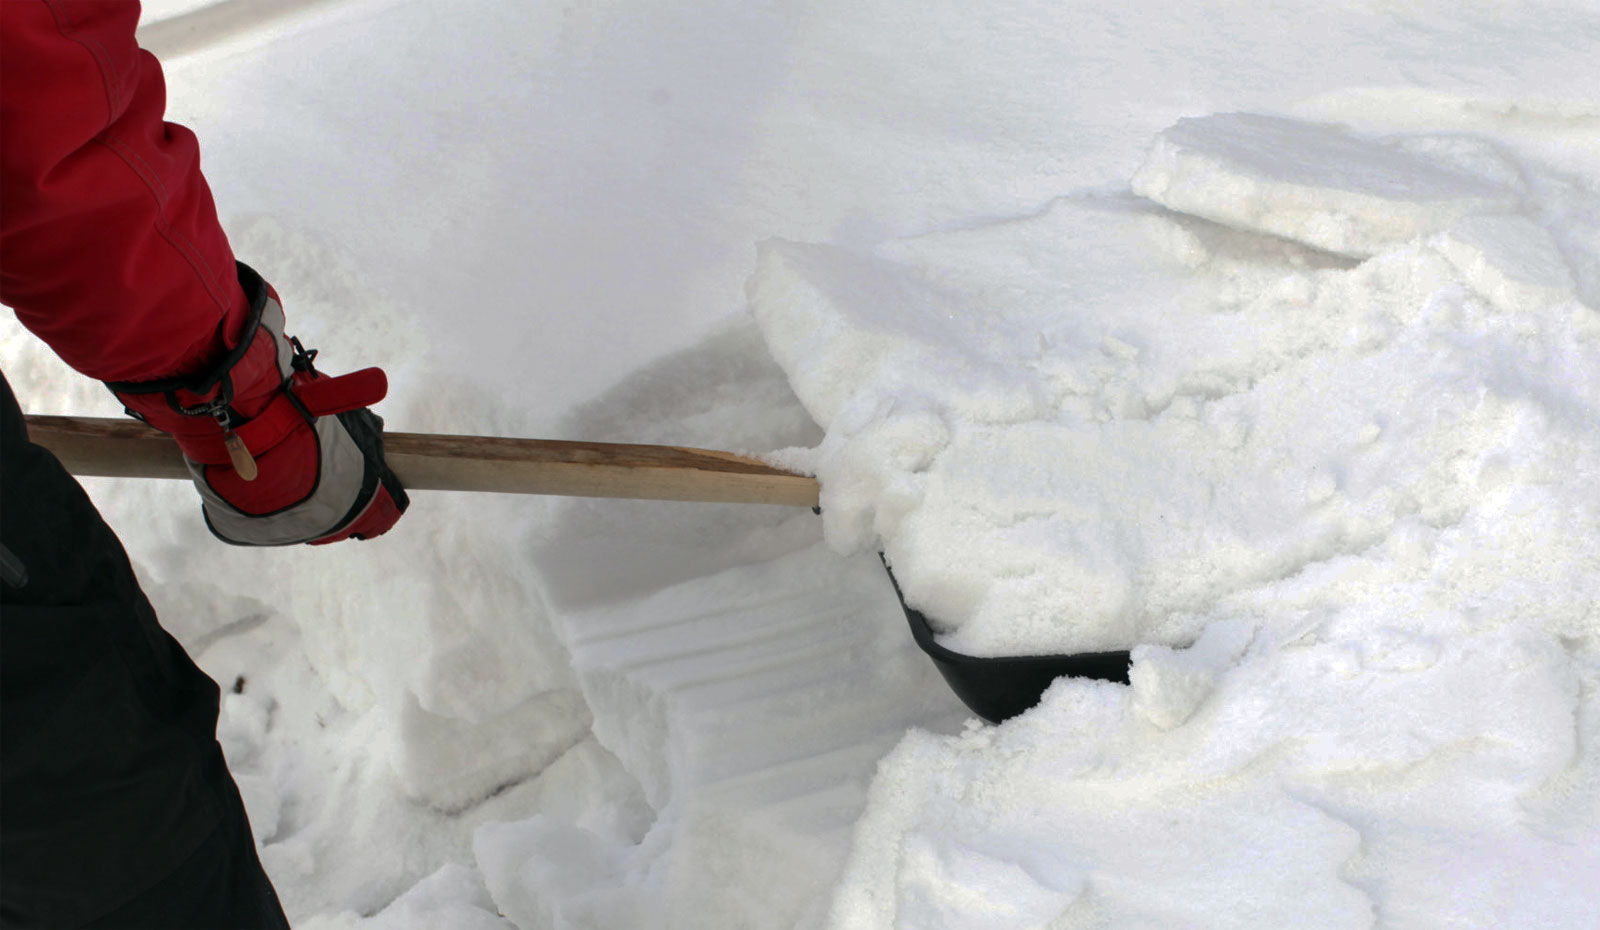 Снять снежок. Убирает снег. Лопата для уборки снега. Уборка снега вручную. Лопата для очистки снега с крыши.